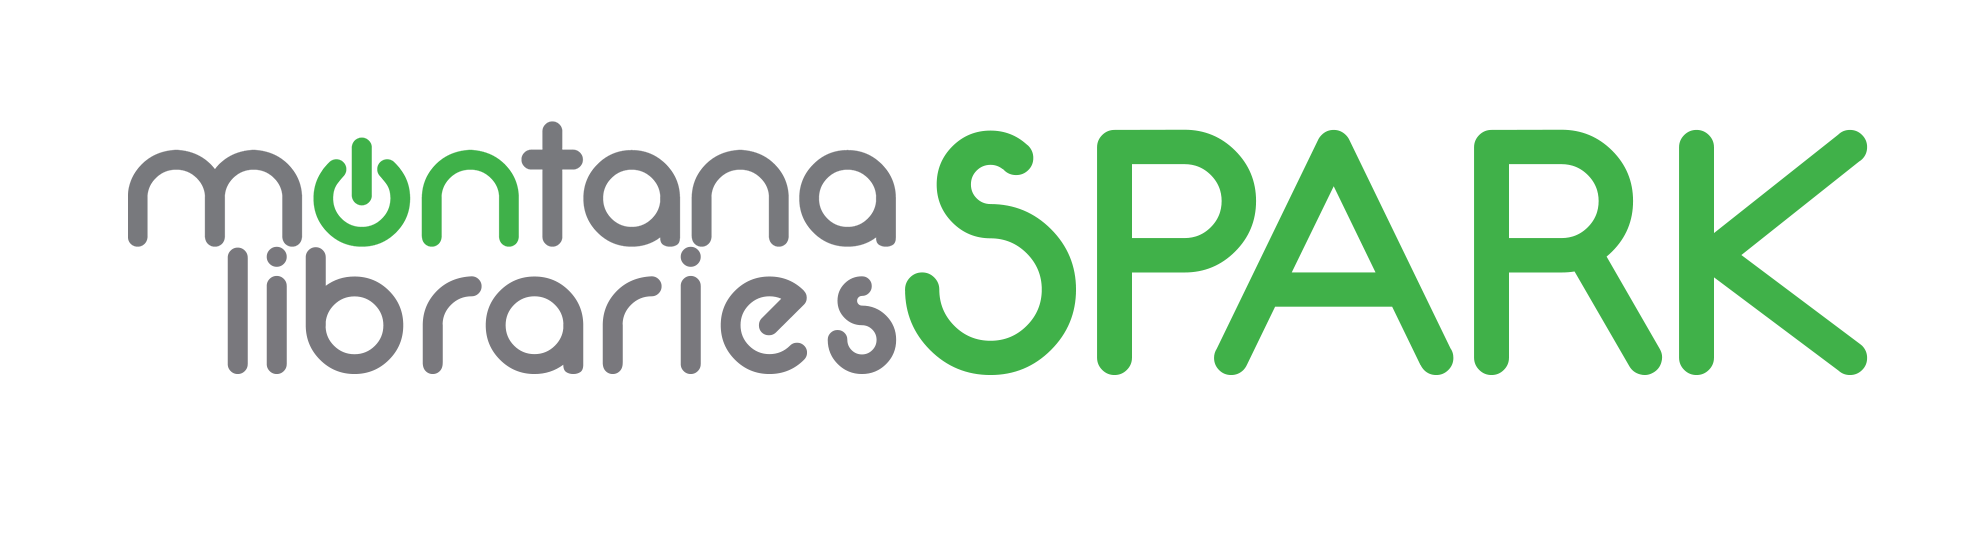 Montana Libraries Spark Logo